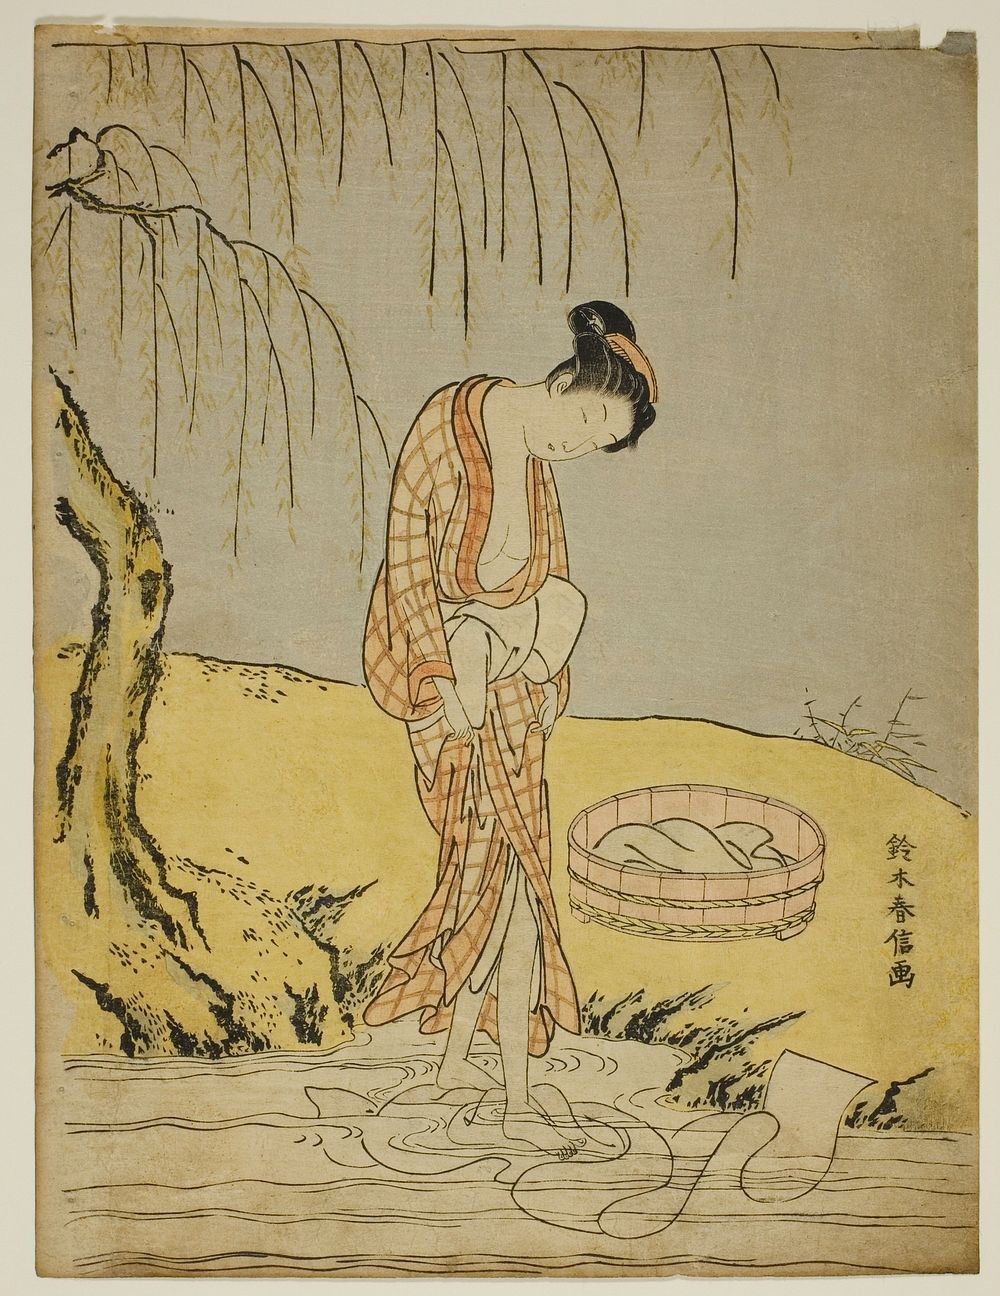 Washing Cloth in a Stream by Suzuki Harunobu